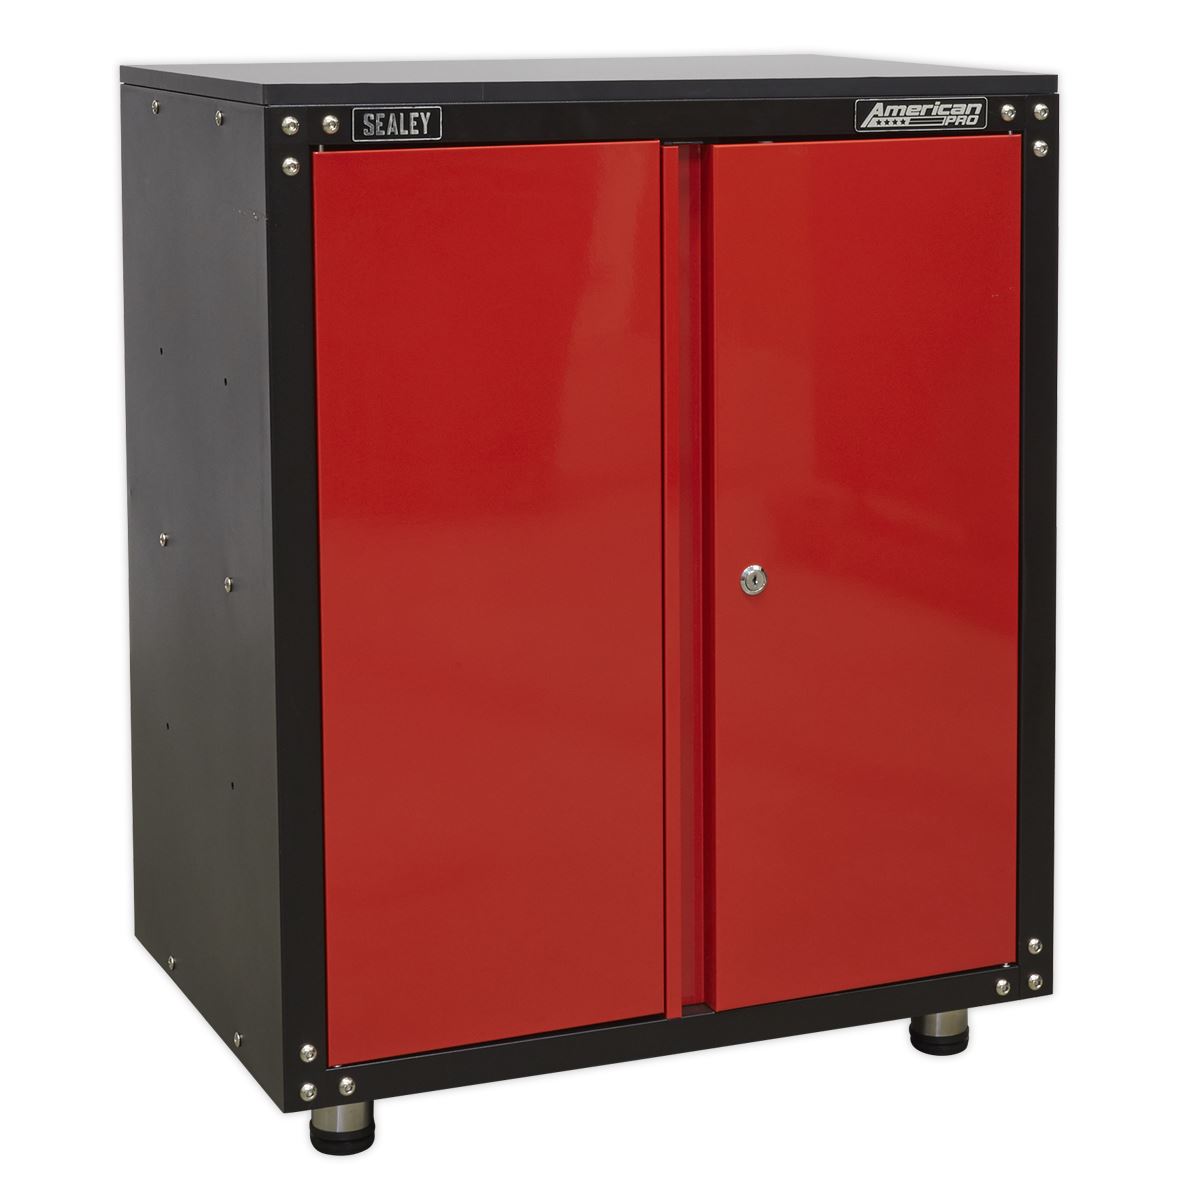 Sealey American Pro Modular 2 Door Cabinet with Worktop 665mm